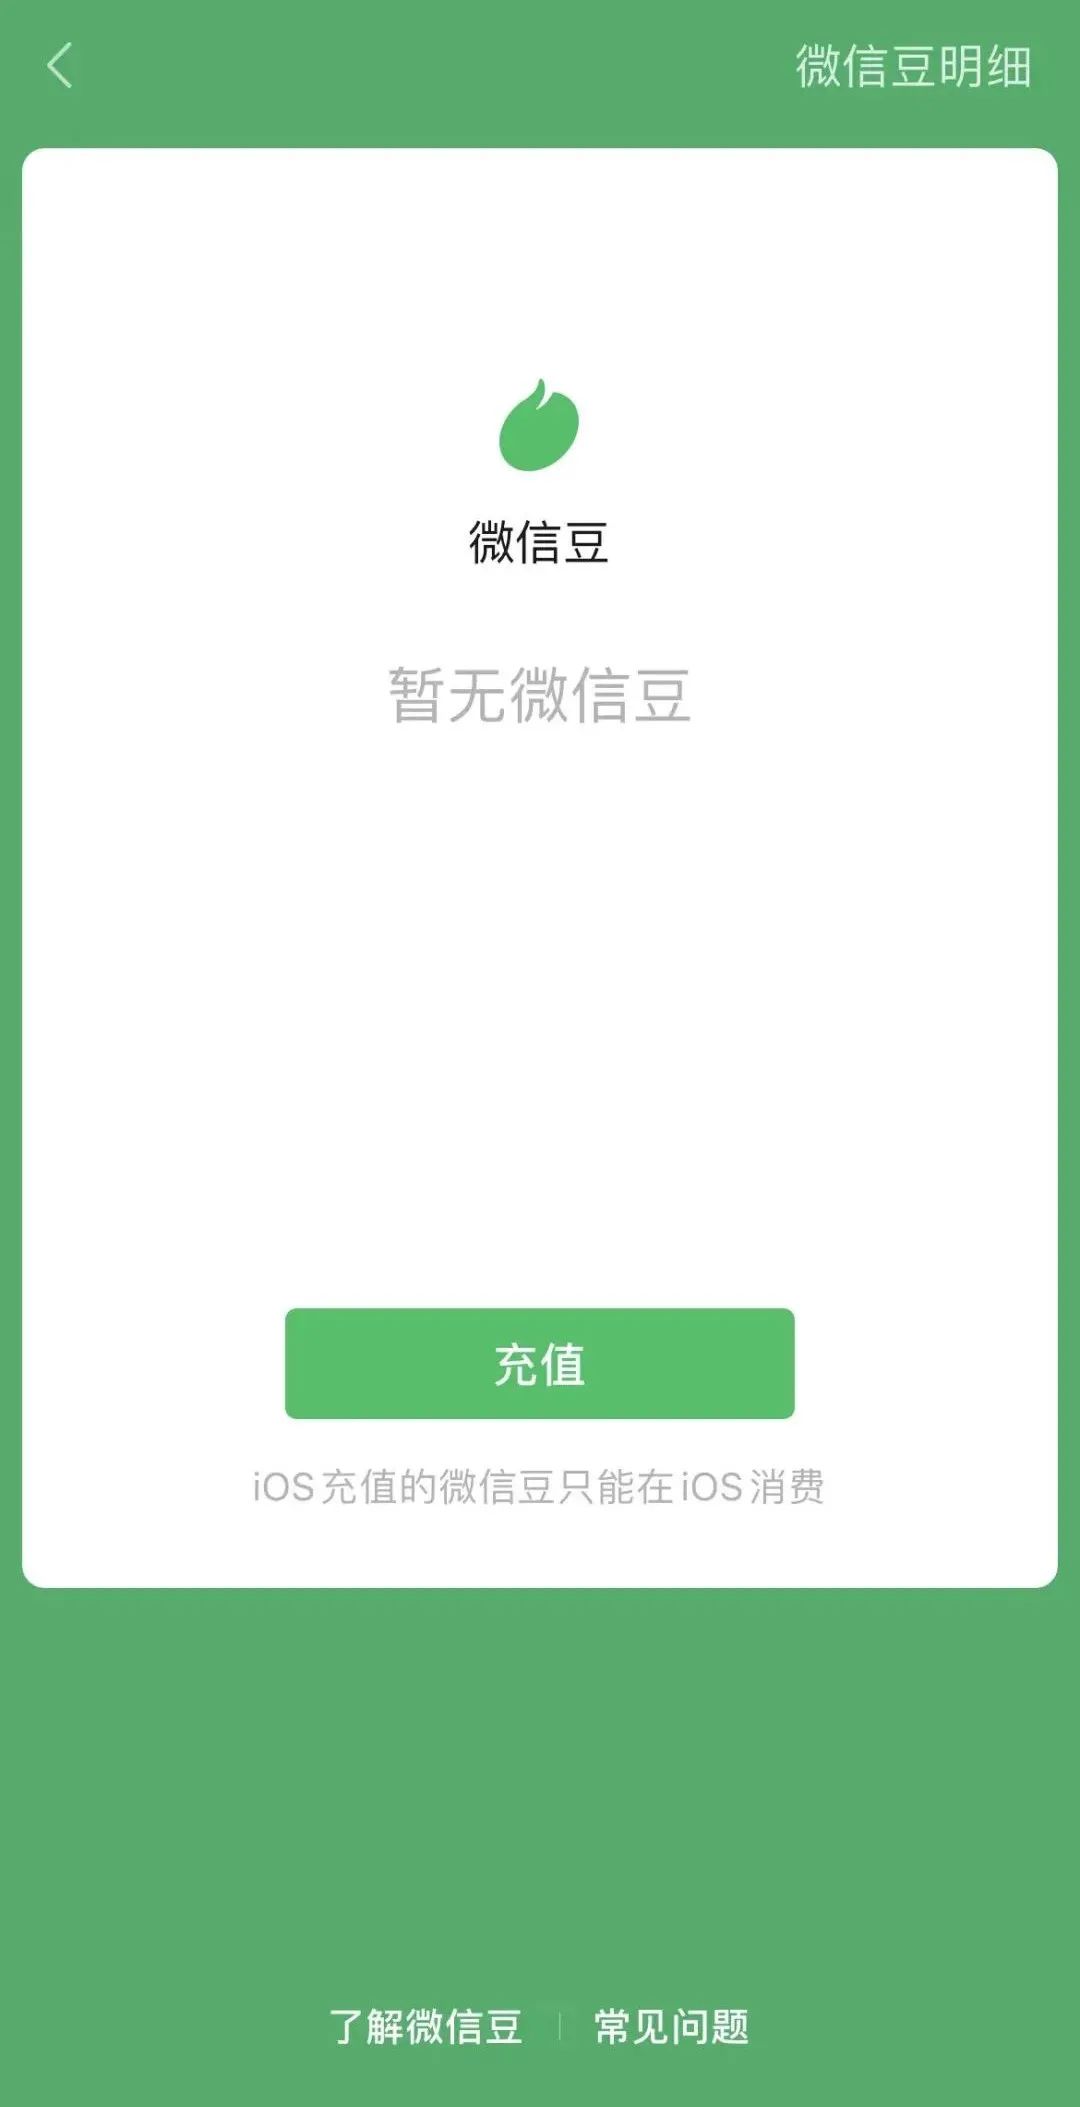 Iphone自带的提示app不显示图片和动画 - Apple 社区